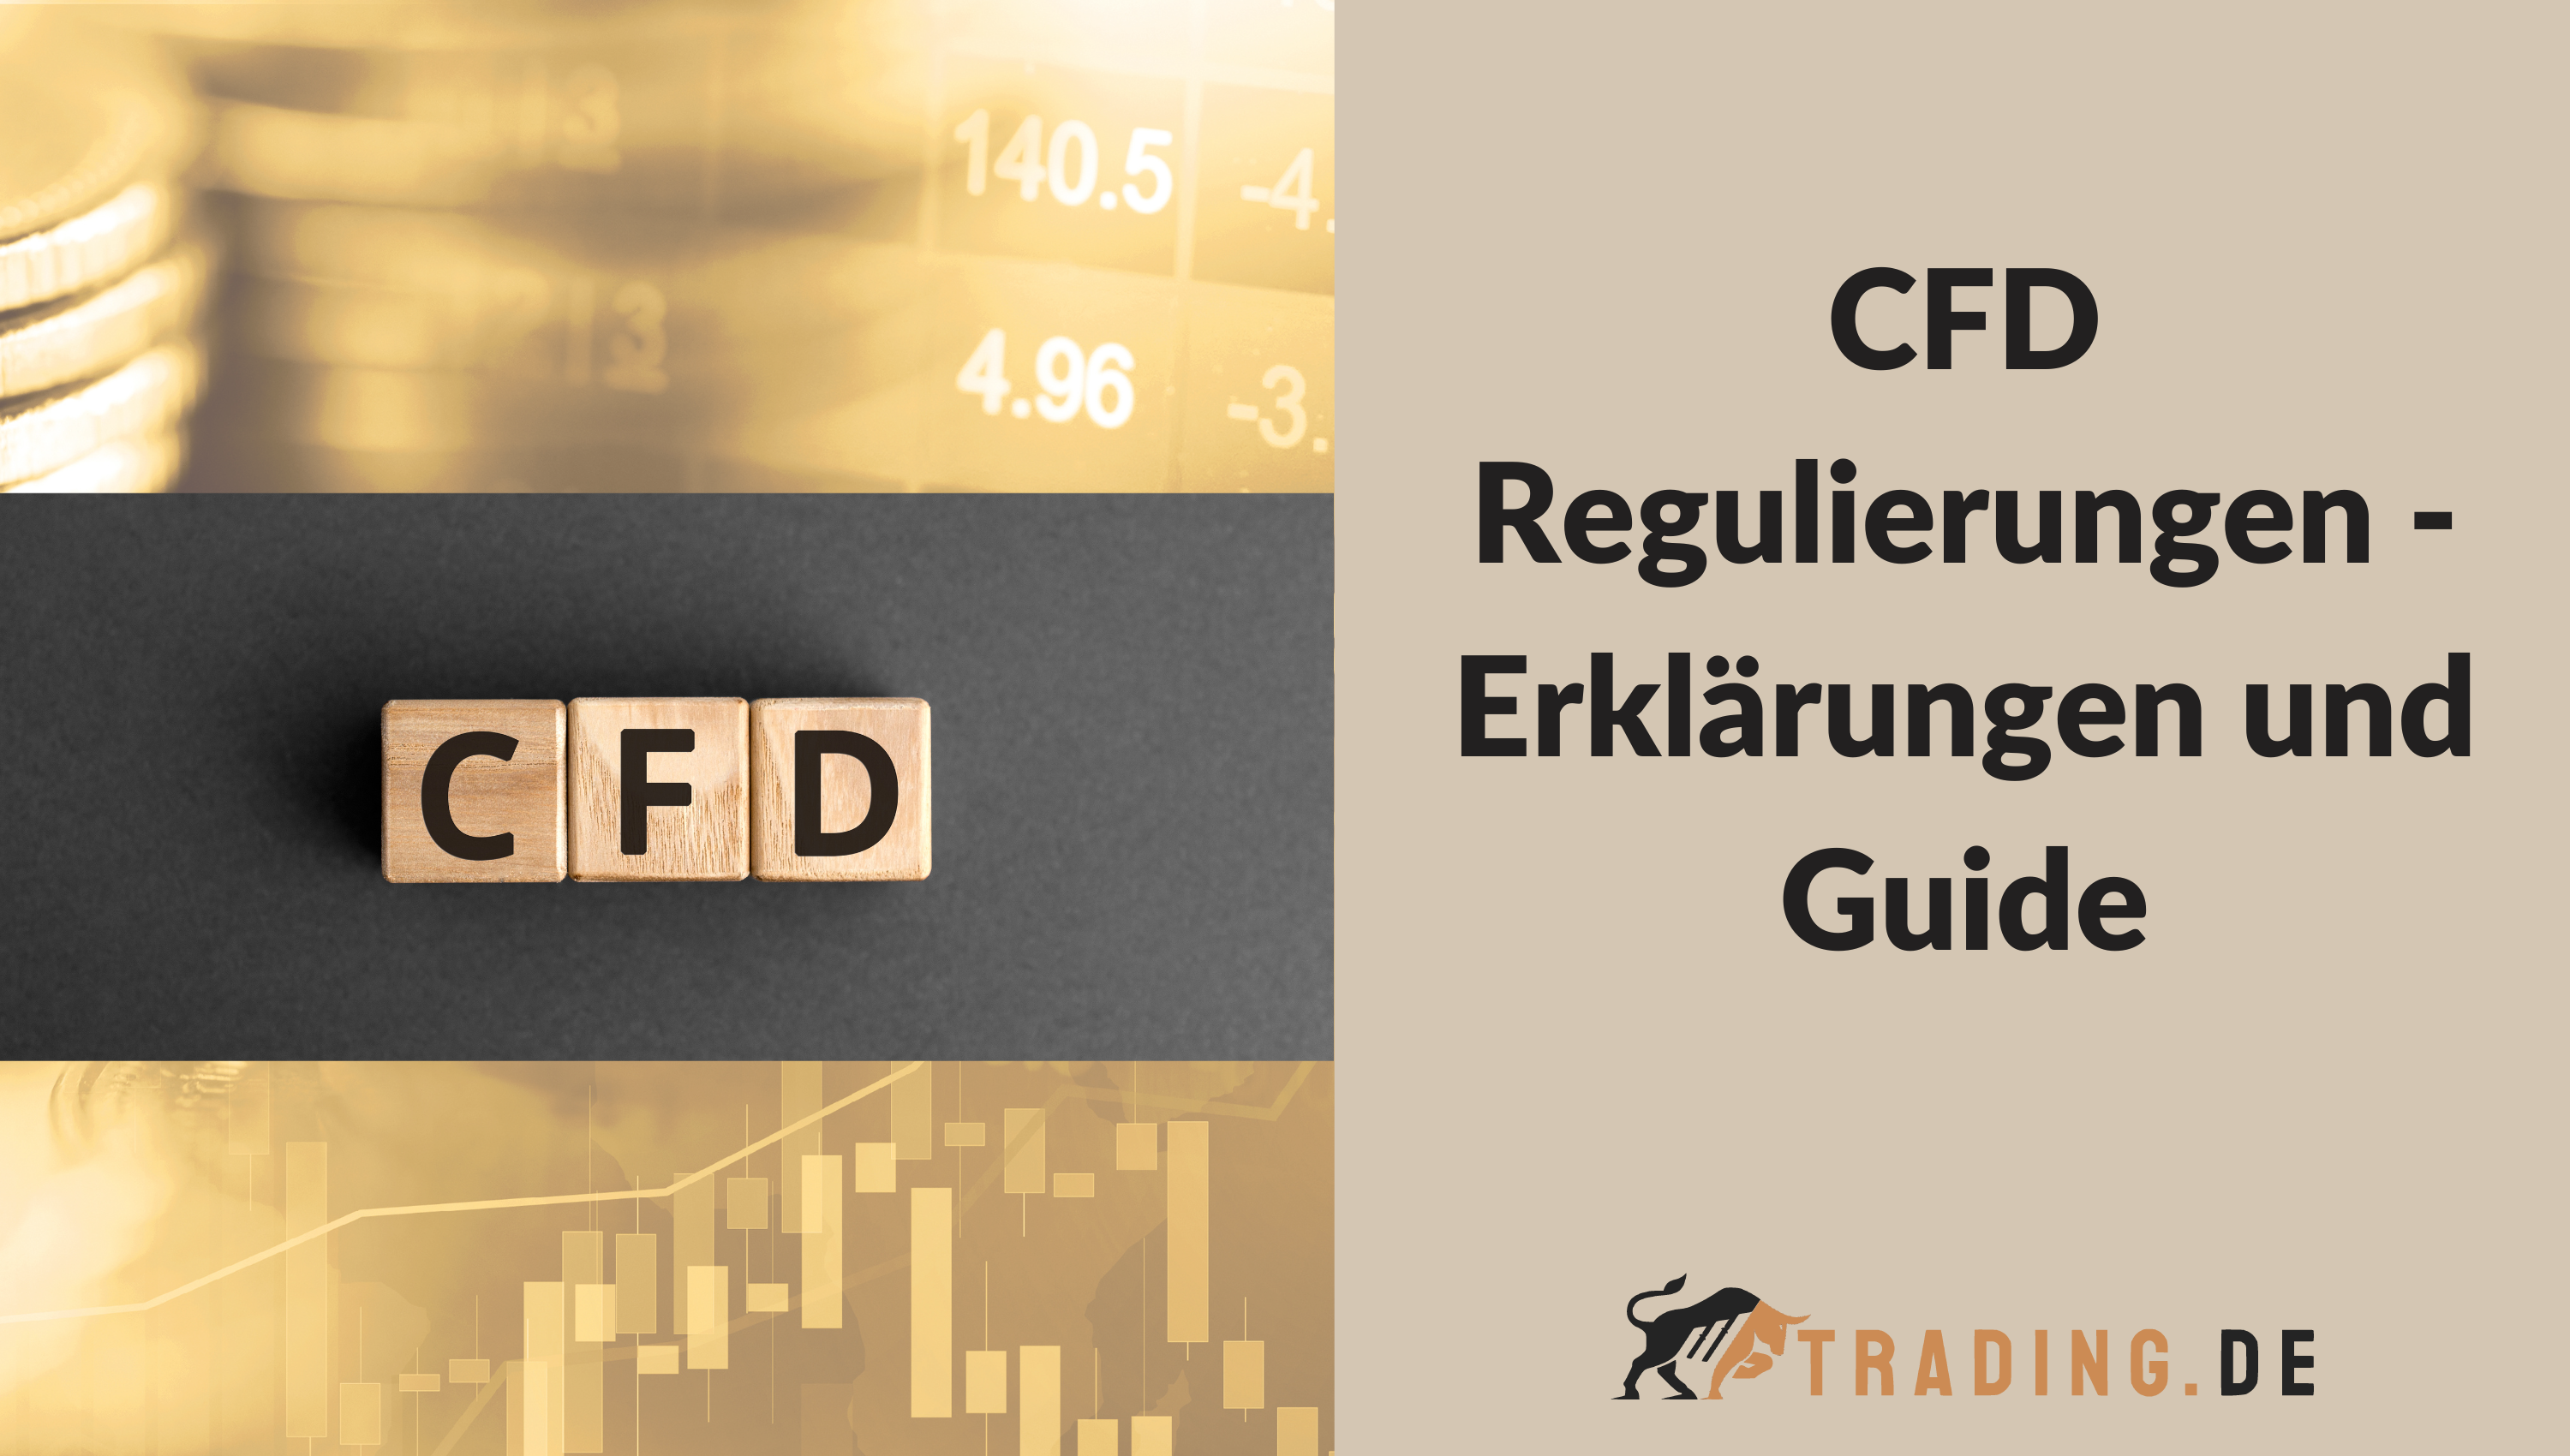 CFD Regulierungen - Erklärungen und Guide